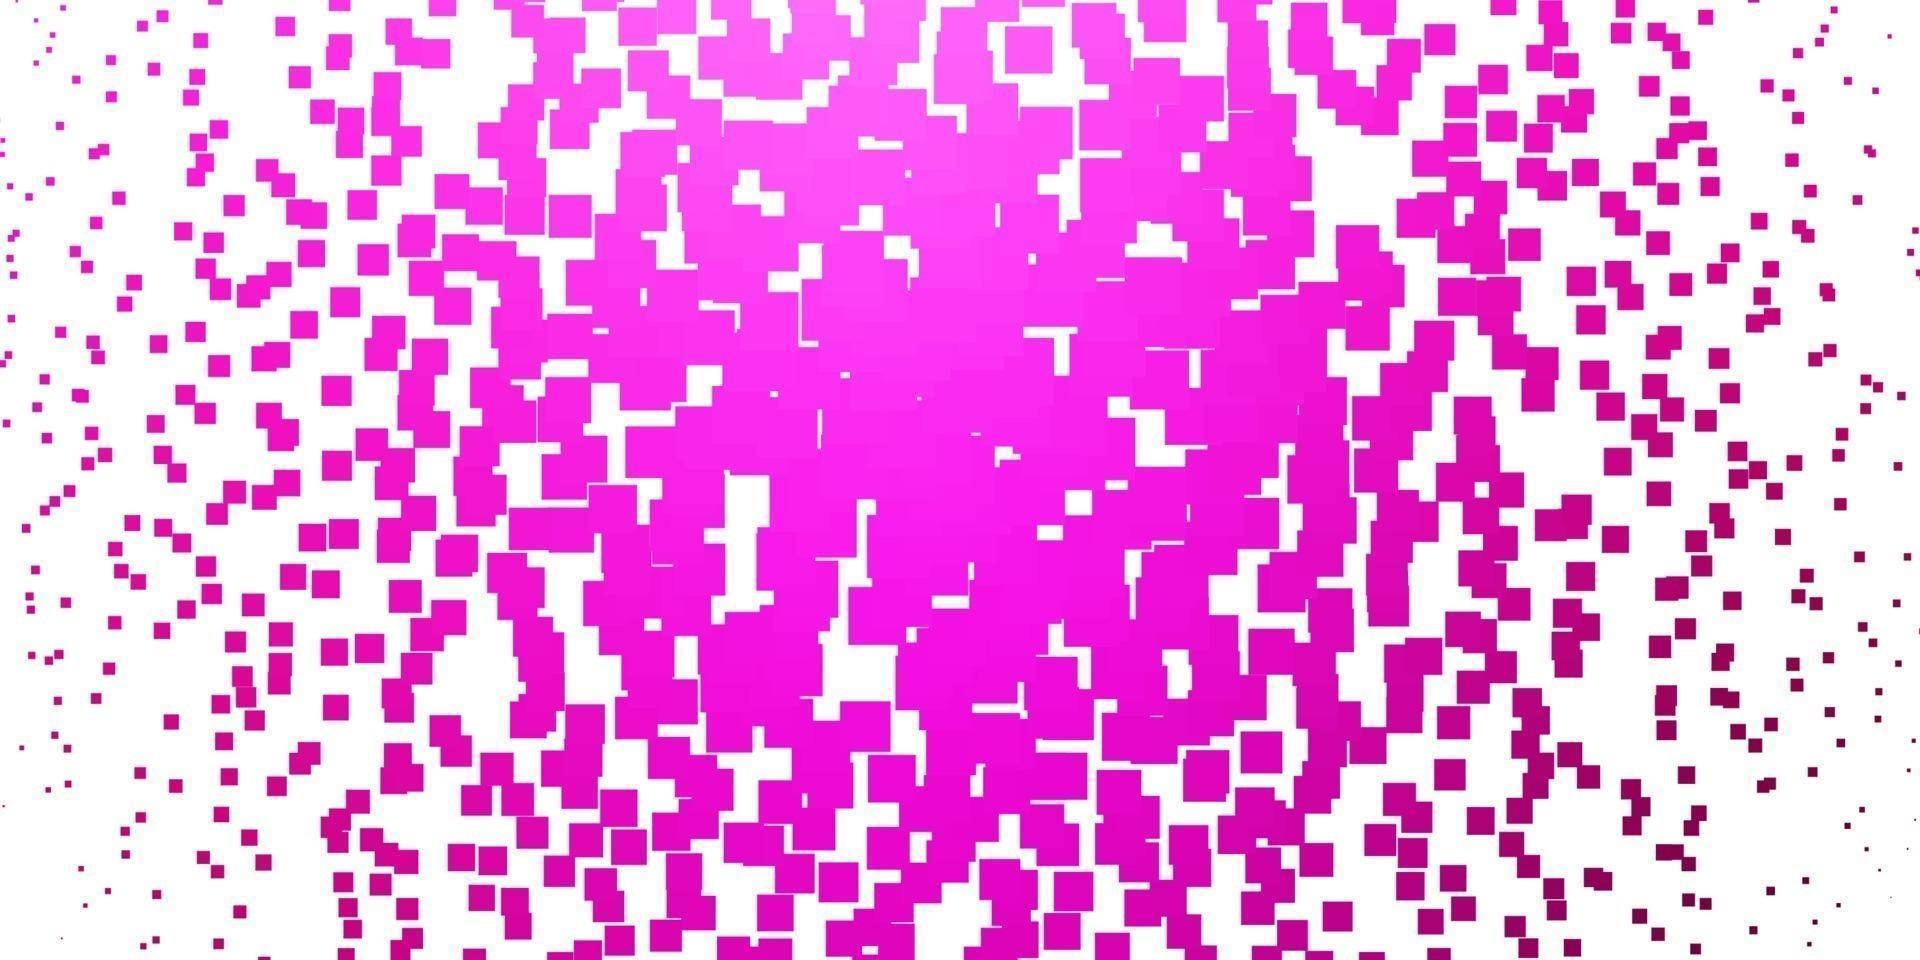 layout de vetor rosa claro com linhas, retângulos.